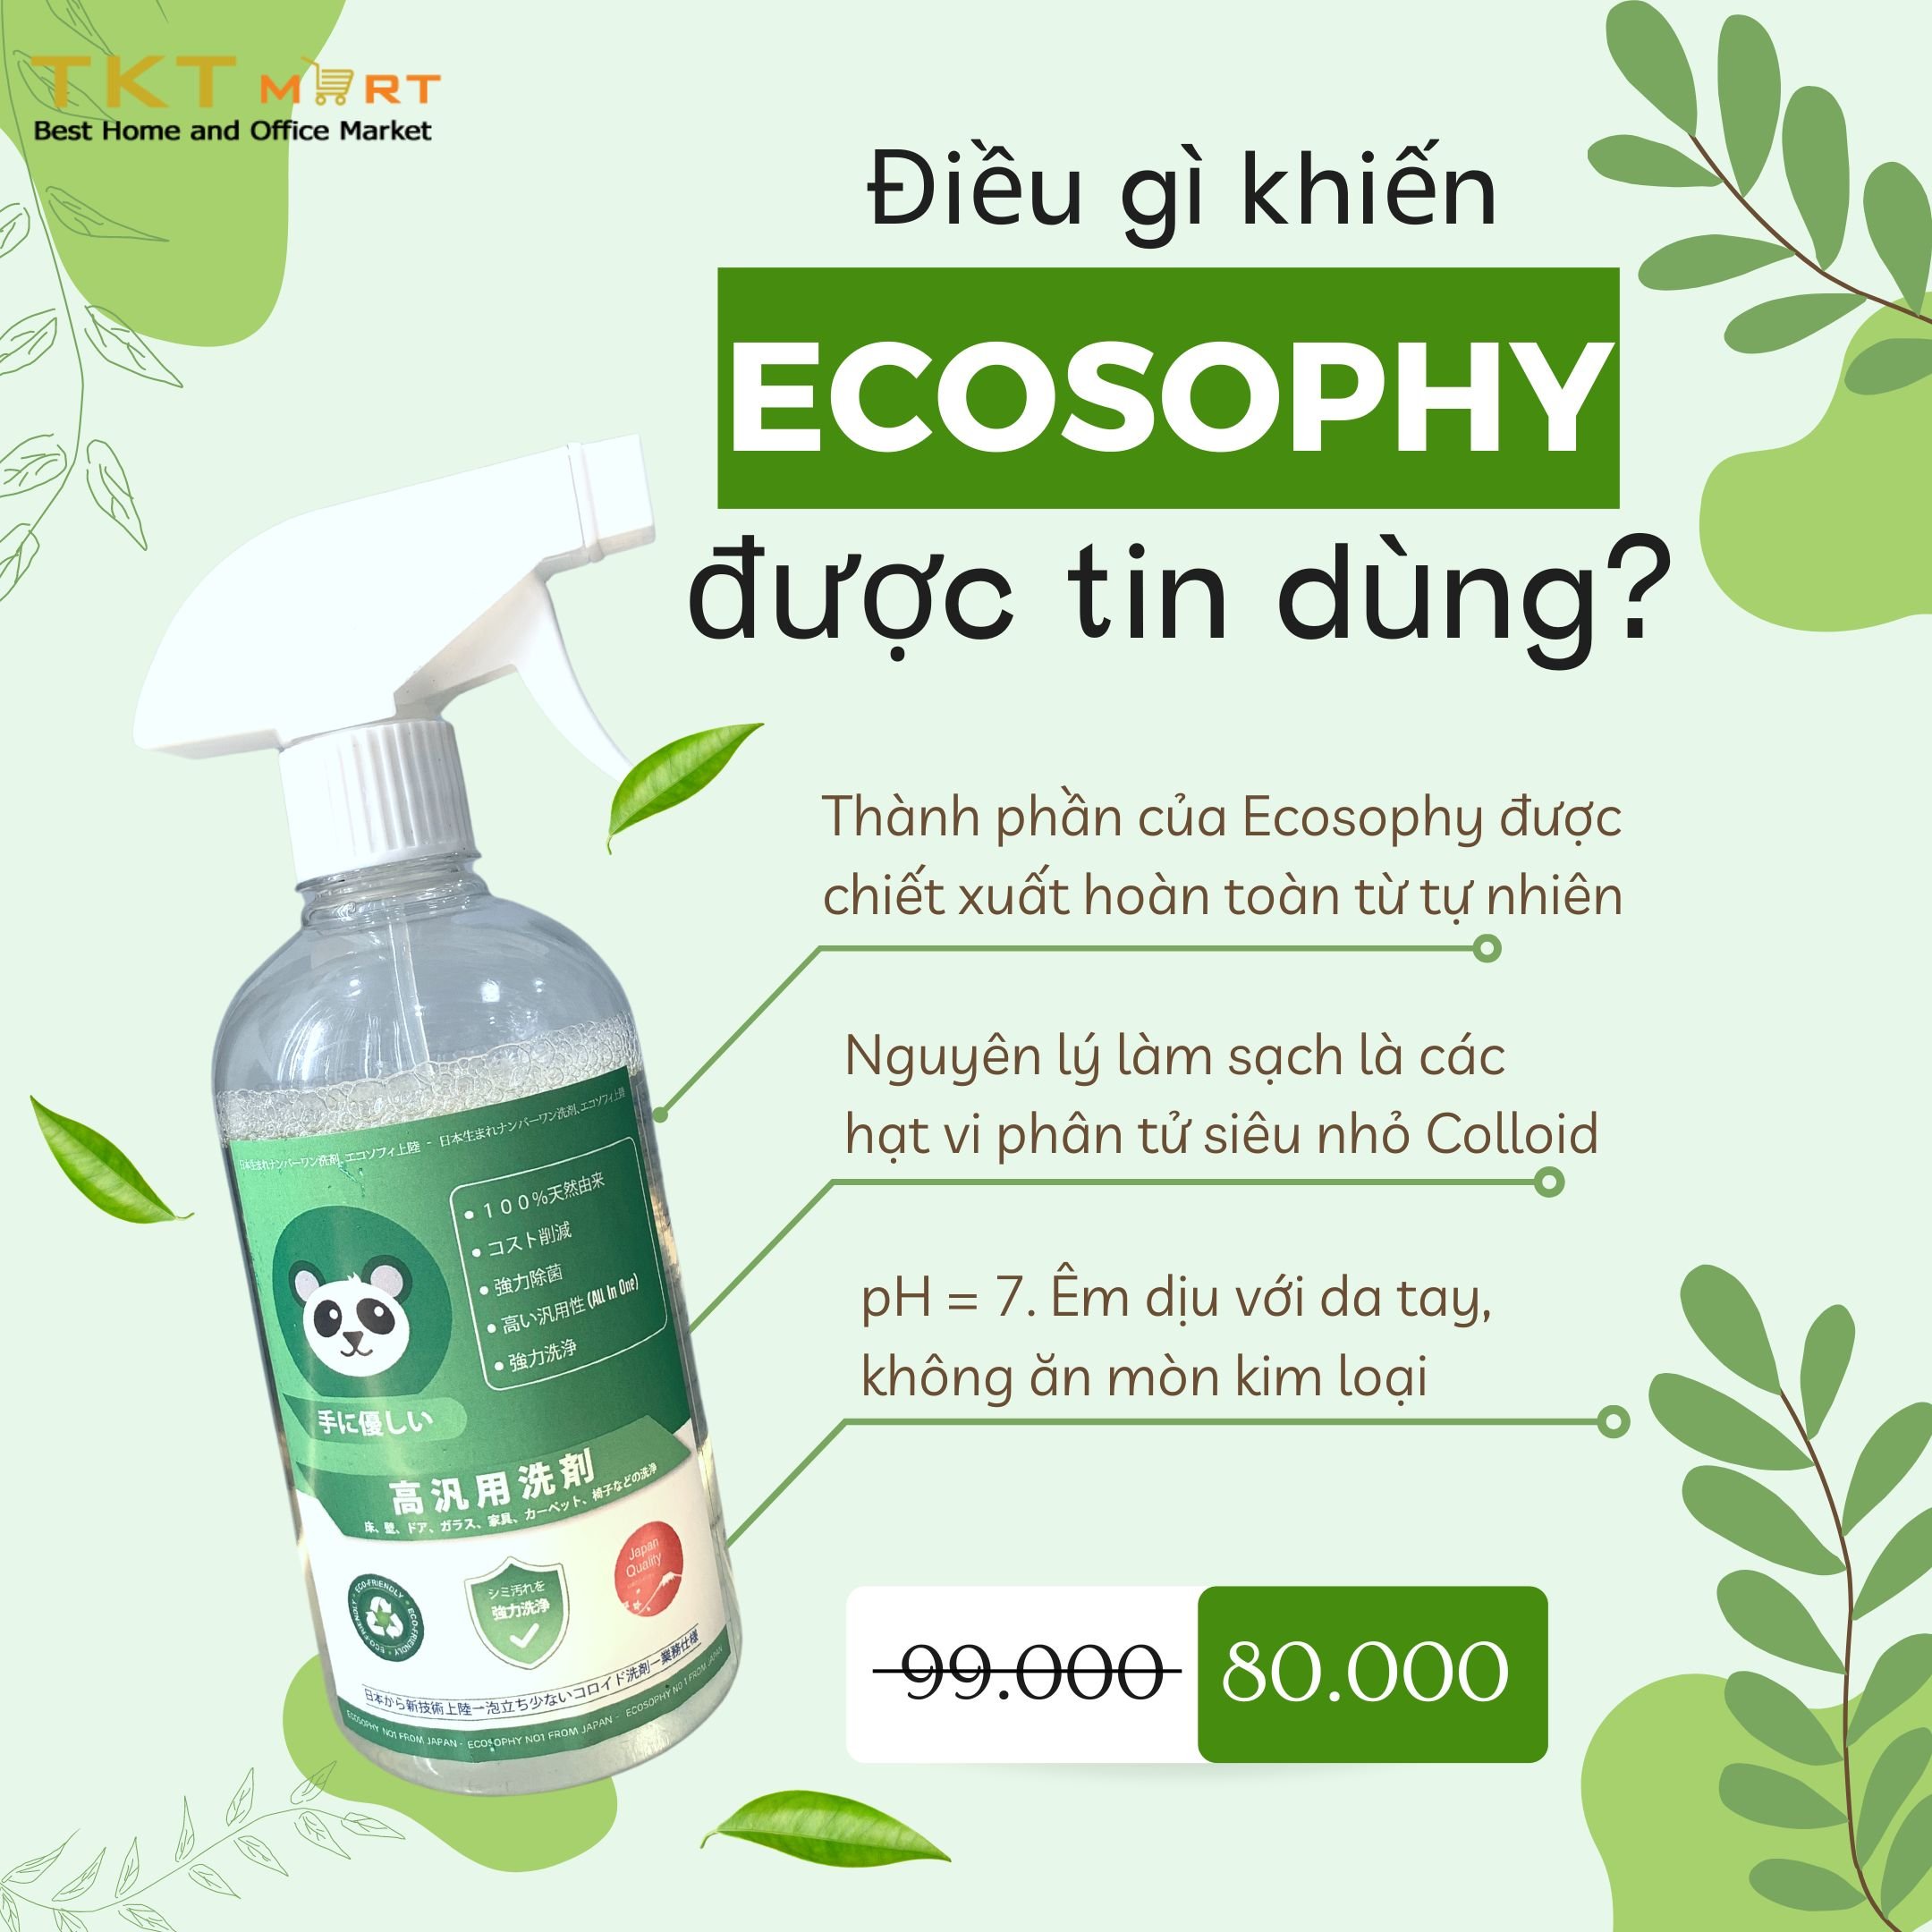 Hình ảnh: Hóa chất tẩy rửa đa năng Ecosophy